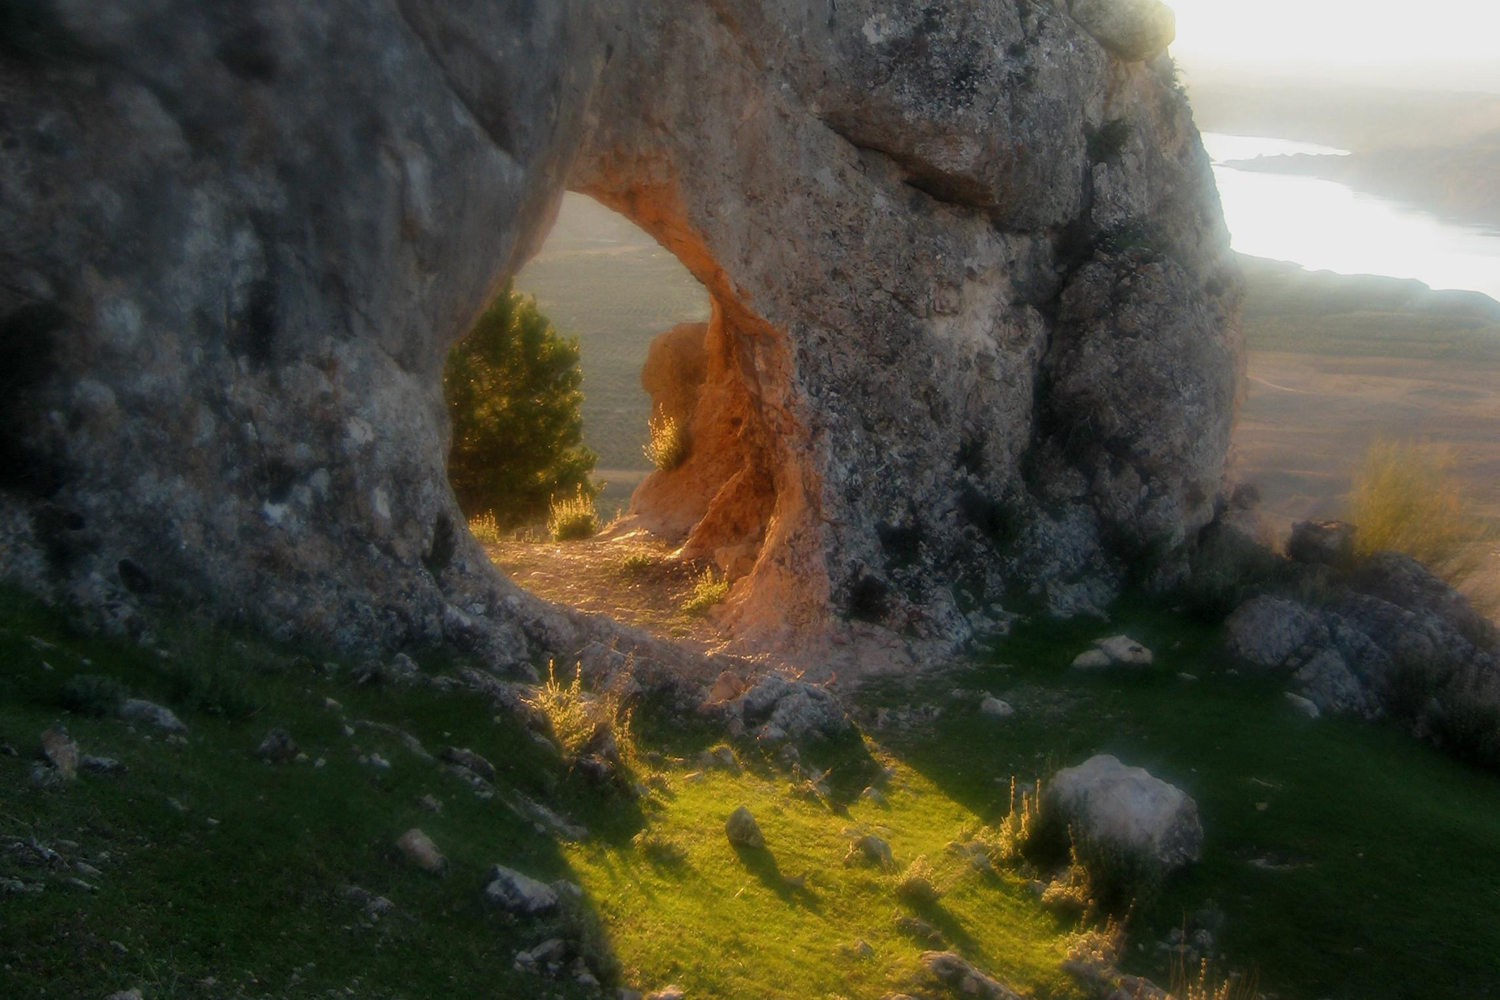 "The Arch" - Negratin, Granada - DR00003